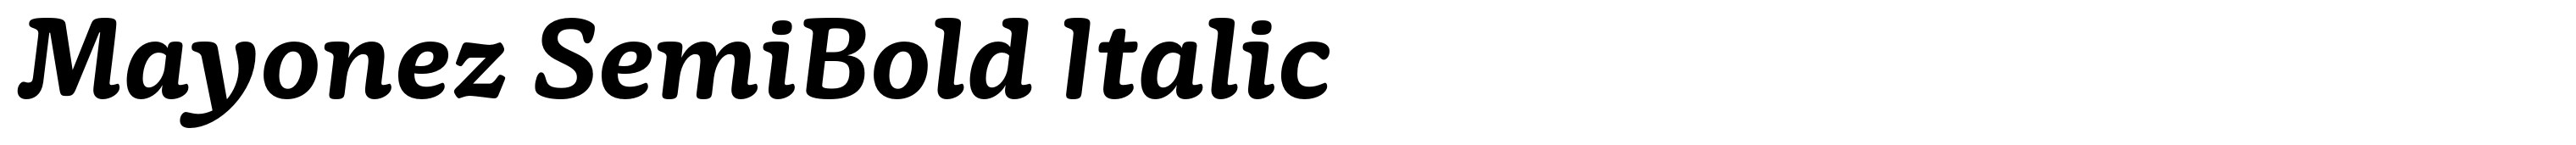 Mayonez SemiBold Italic